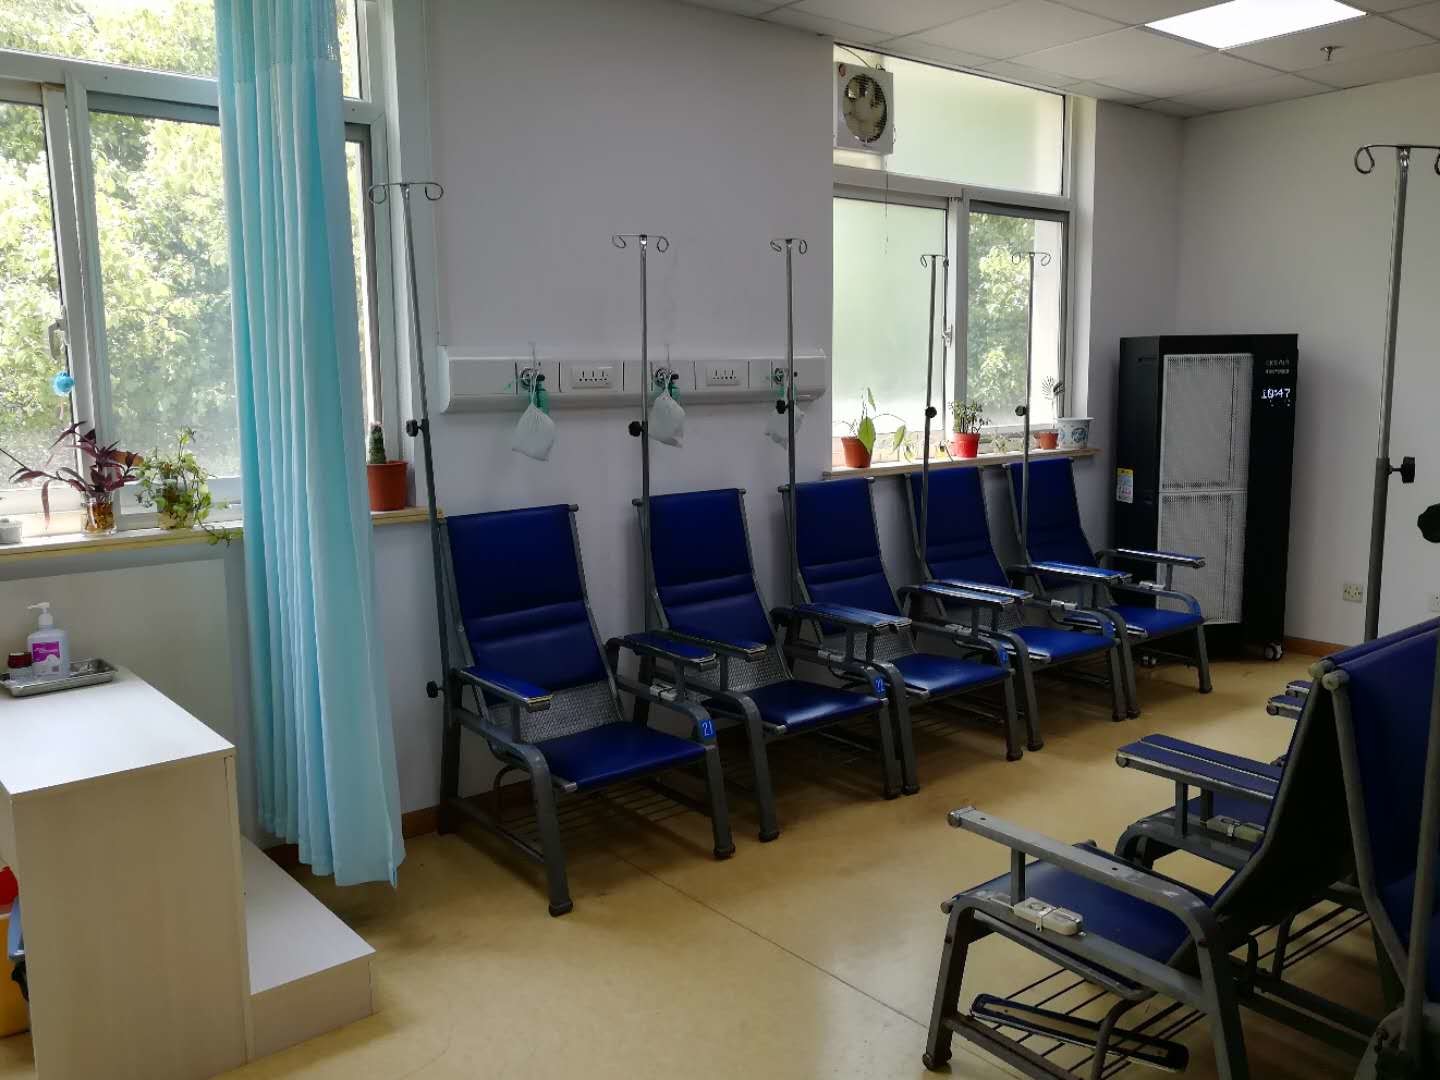 τελευταία εταιρεία περί Πόλης κοινοτικό κέντρο υγείας της Σαγκάη Wujiaochang